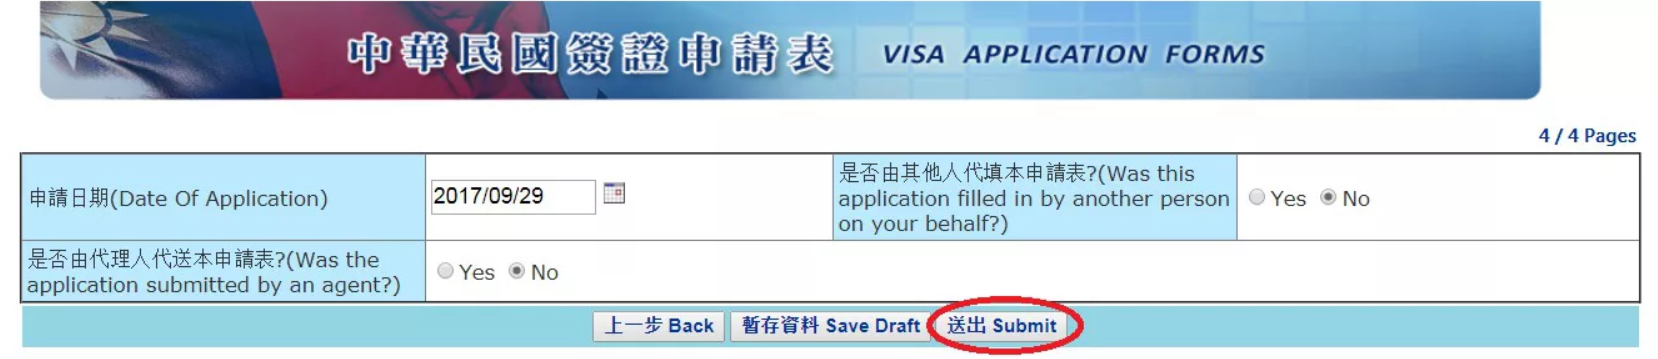 Xác nhận hoàn thành thông tin - Hướng dẫn điền đơn xin visa Đài Loan online